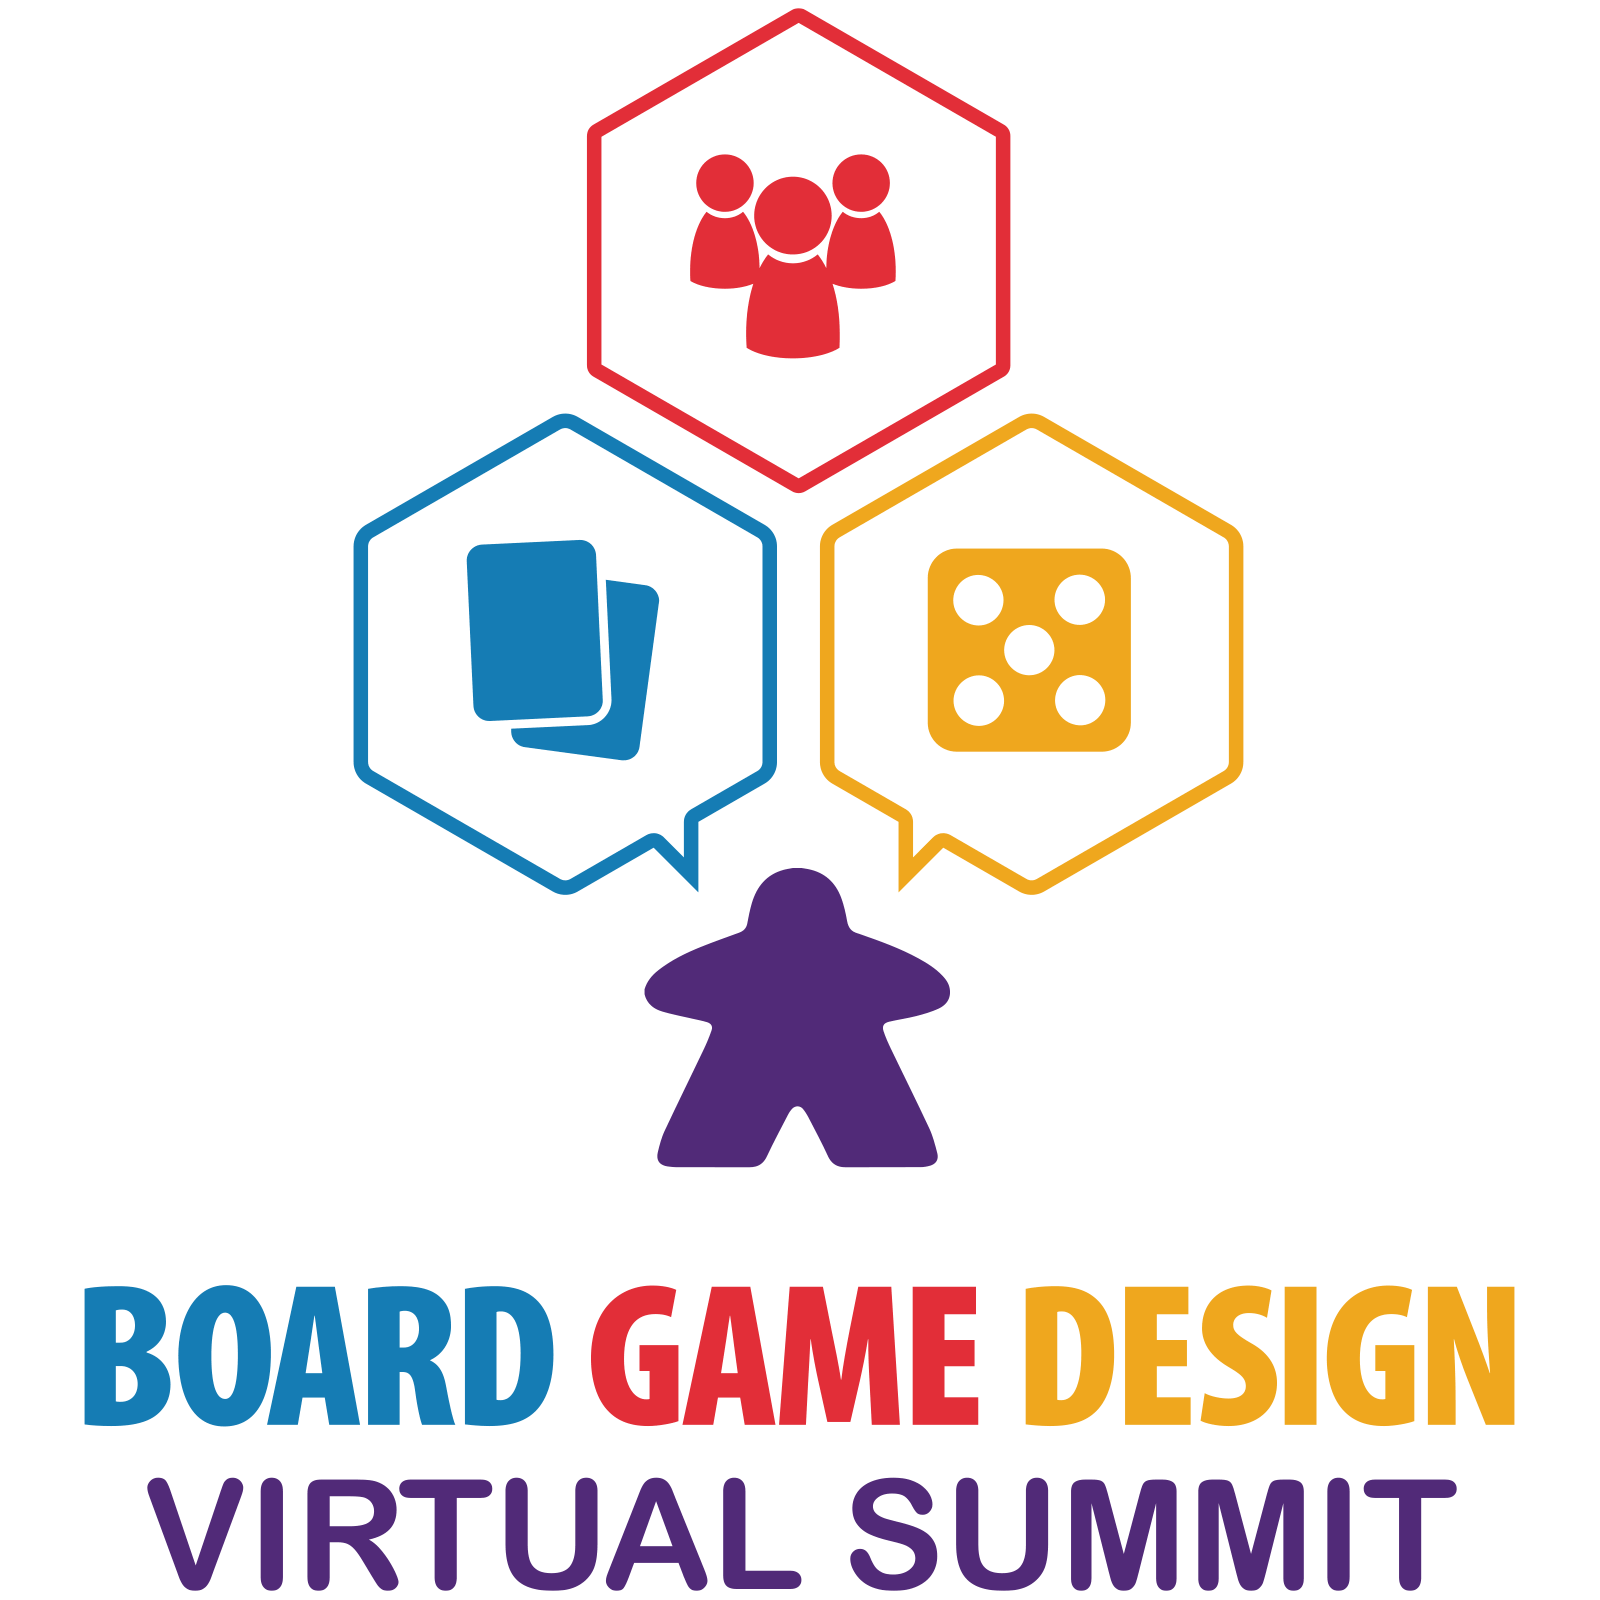 Board Game design virtual summit